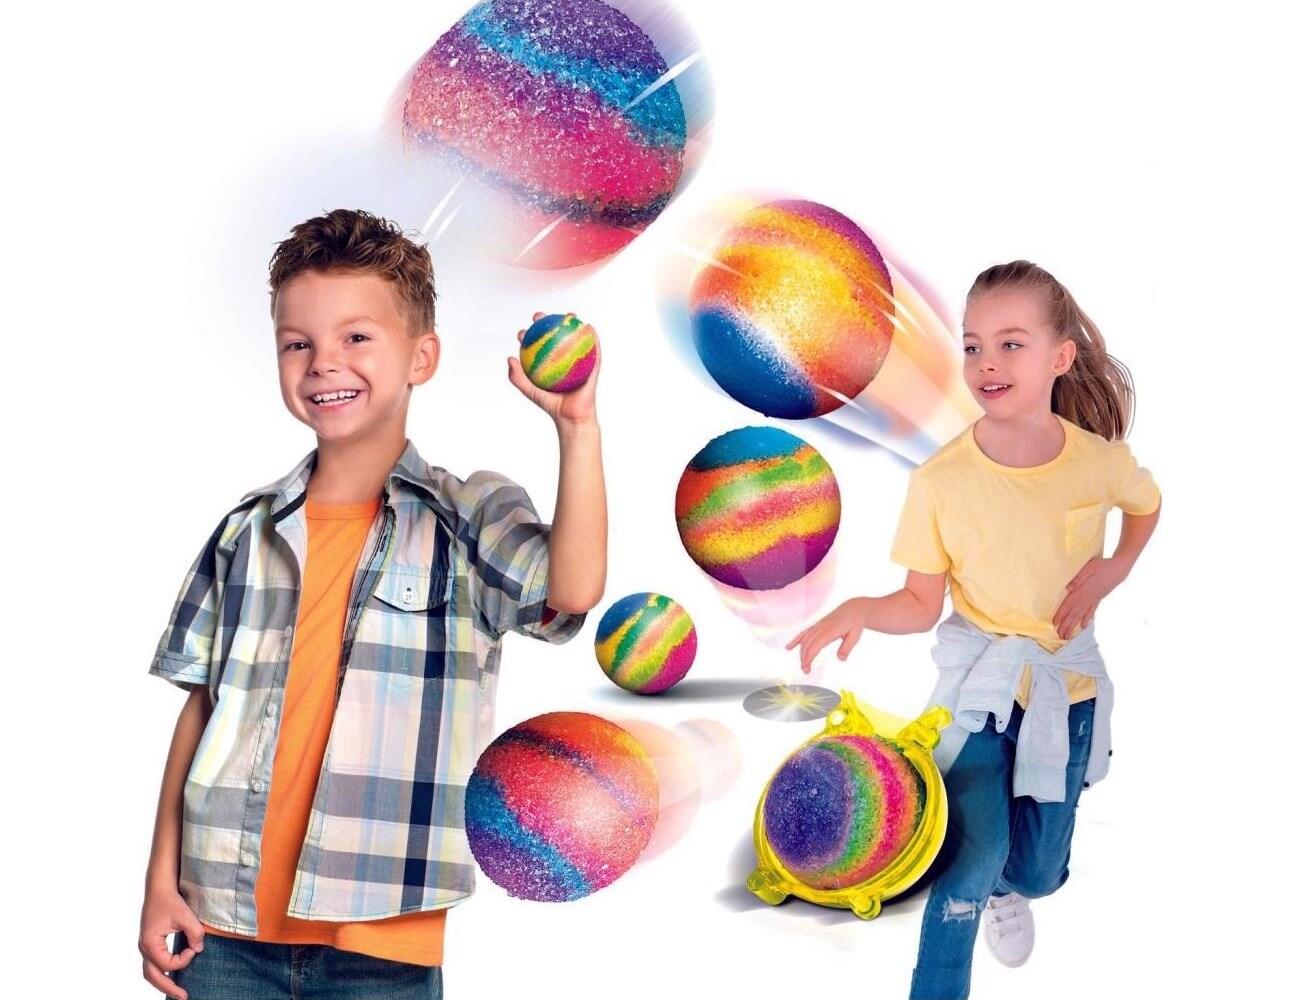 Naučná sada Clementoni Science Crazy Balls je vhodná pro budoucí vědce, chemiky, fyziky a všechny kreativní děti od 8 let, kdy slouží k výrobě naprosto unikátního hopíku.